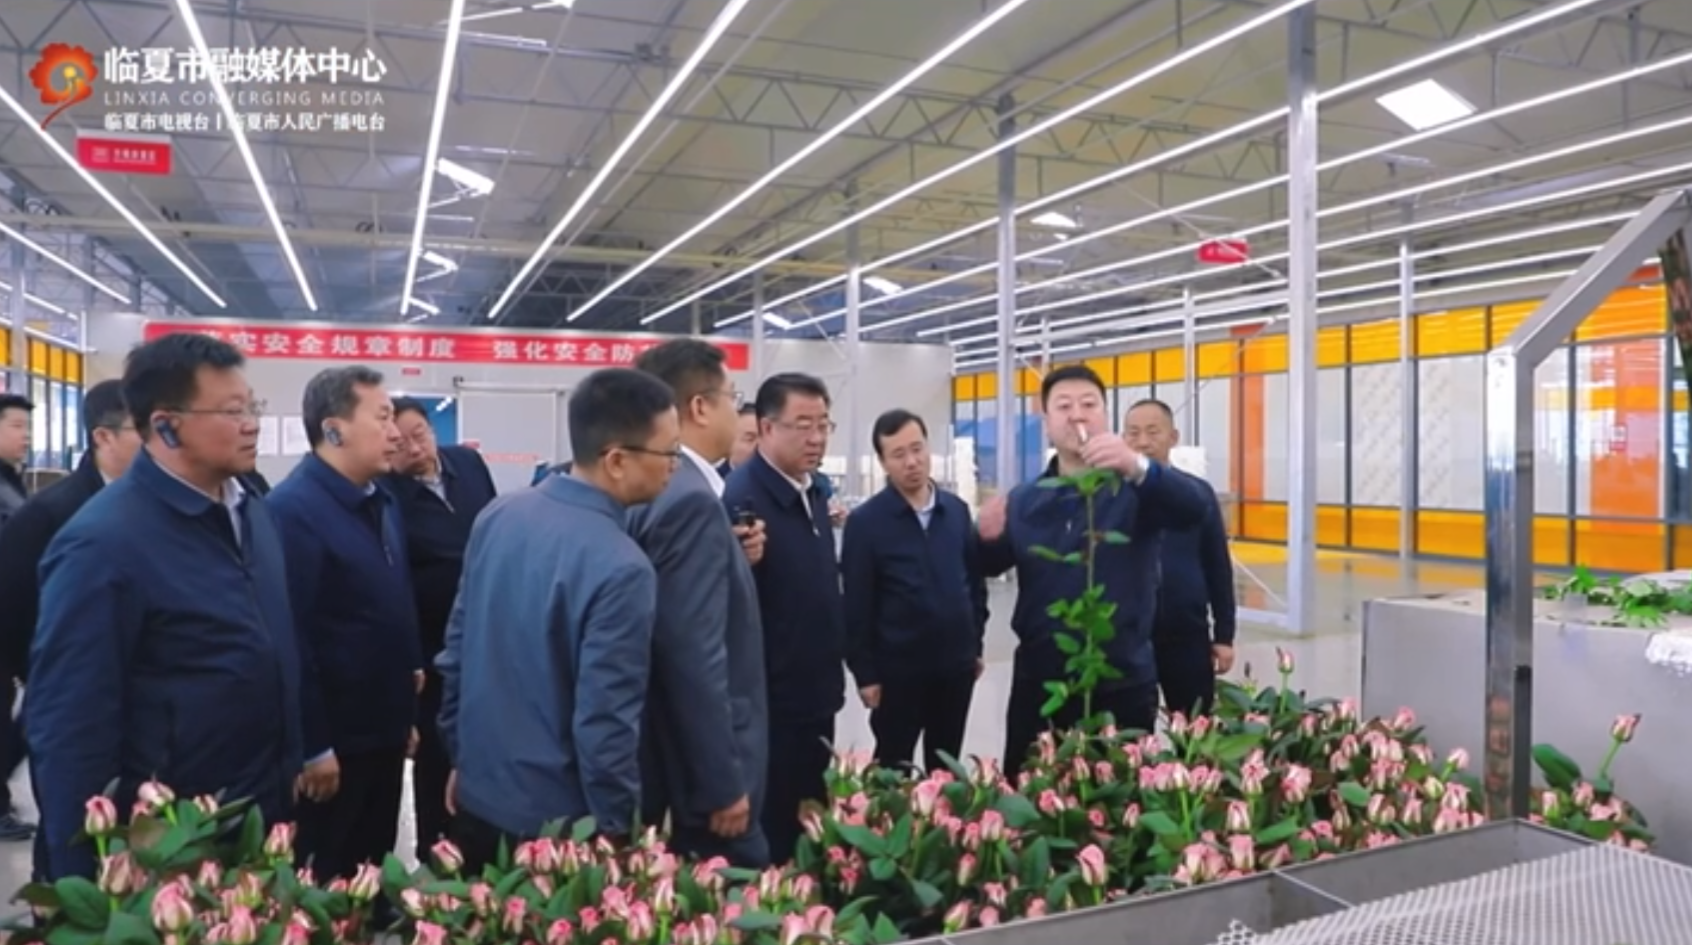 百益亿农国际鲜花港项目——花卉产业盛放“美丽经济”“中国玫瑰超级工厂”